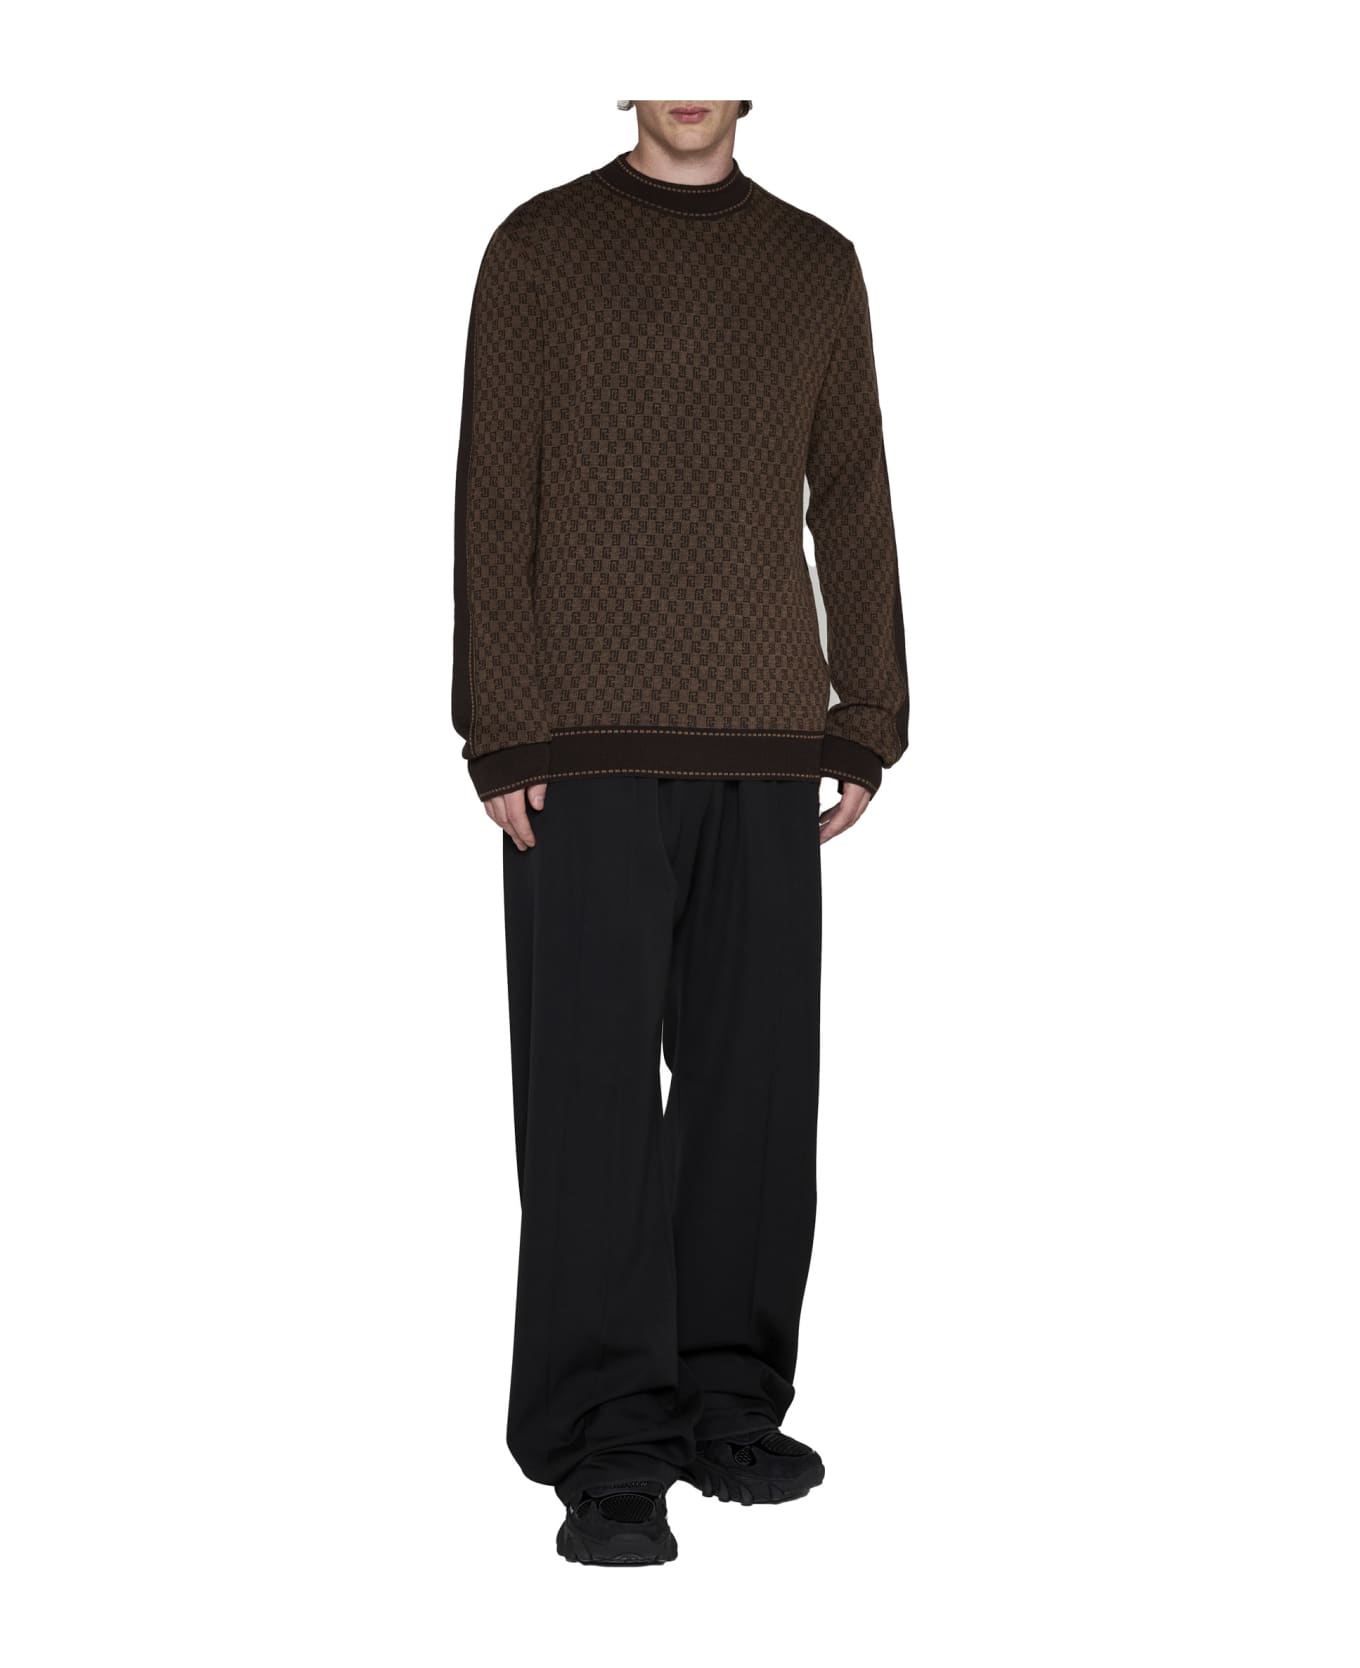 Balmain Sweater - Marron fonce